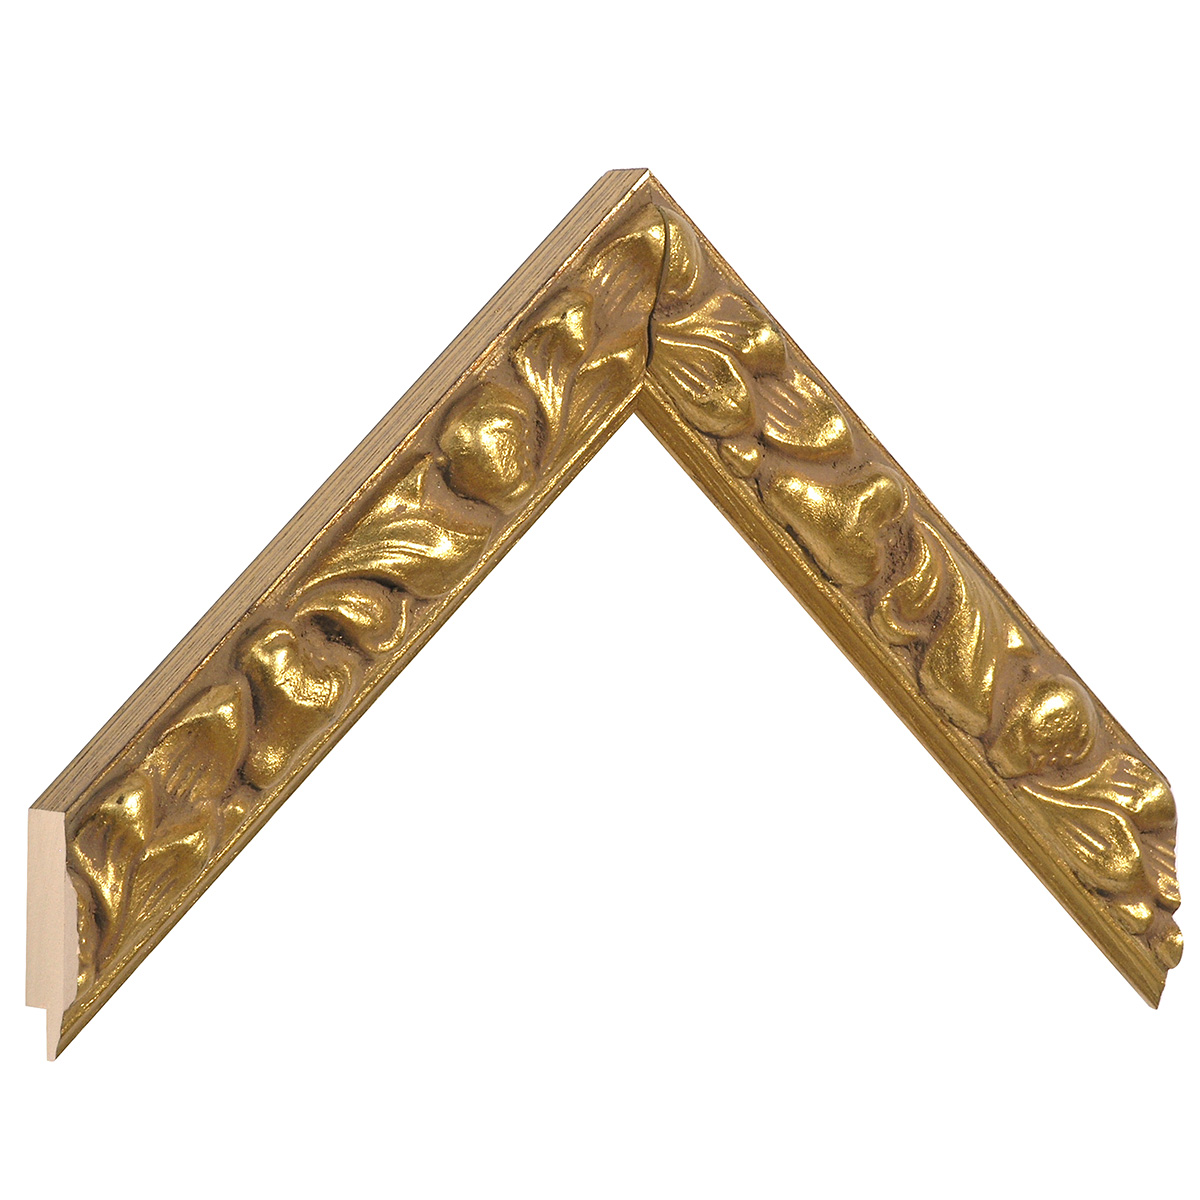 Profil ayous  Lățime 29 mm - finisaj auriu și decorațiuni în relief - Mostră